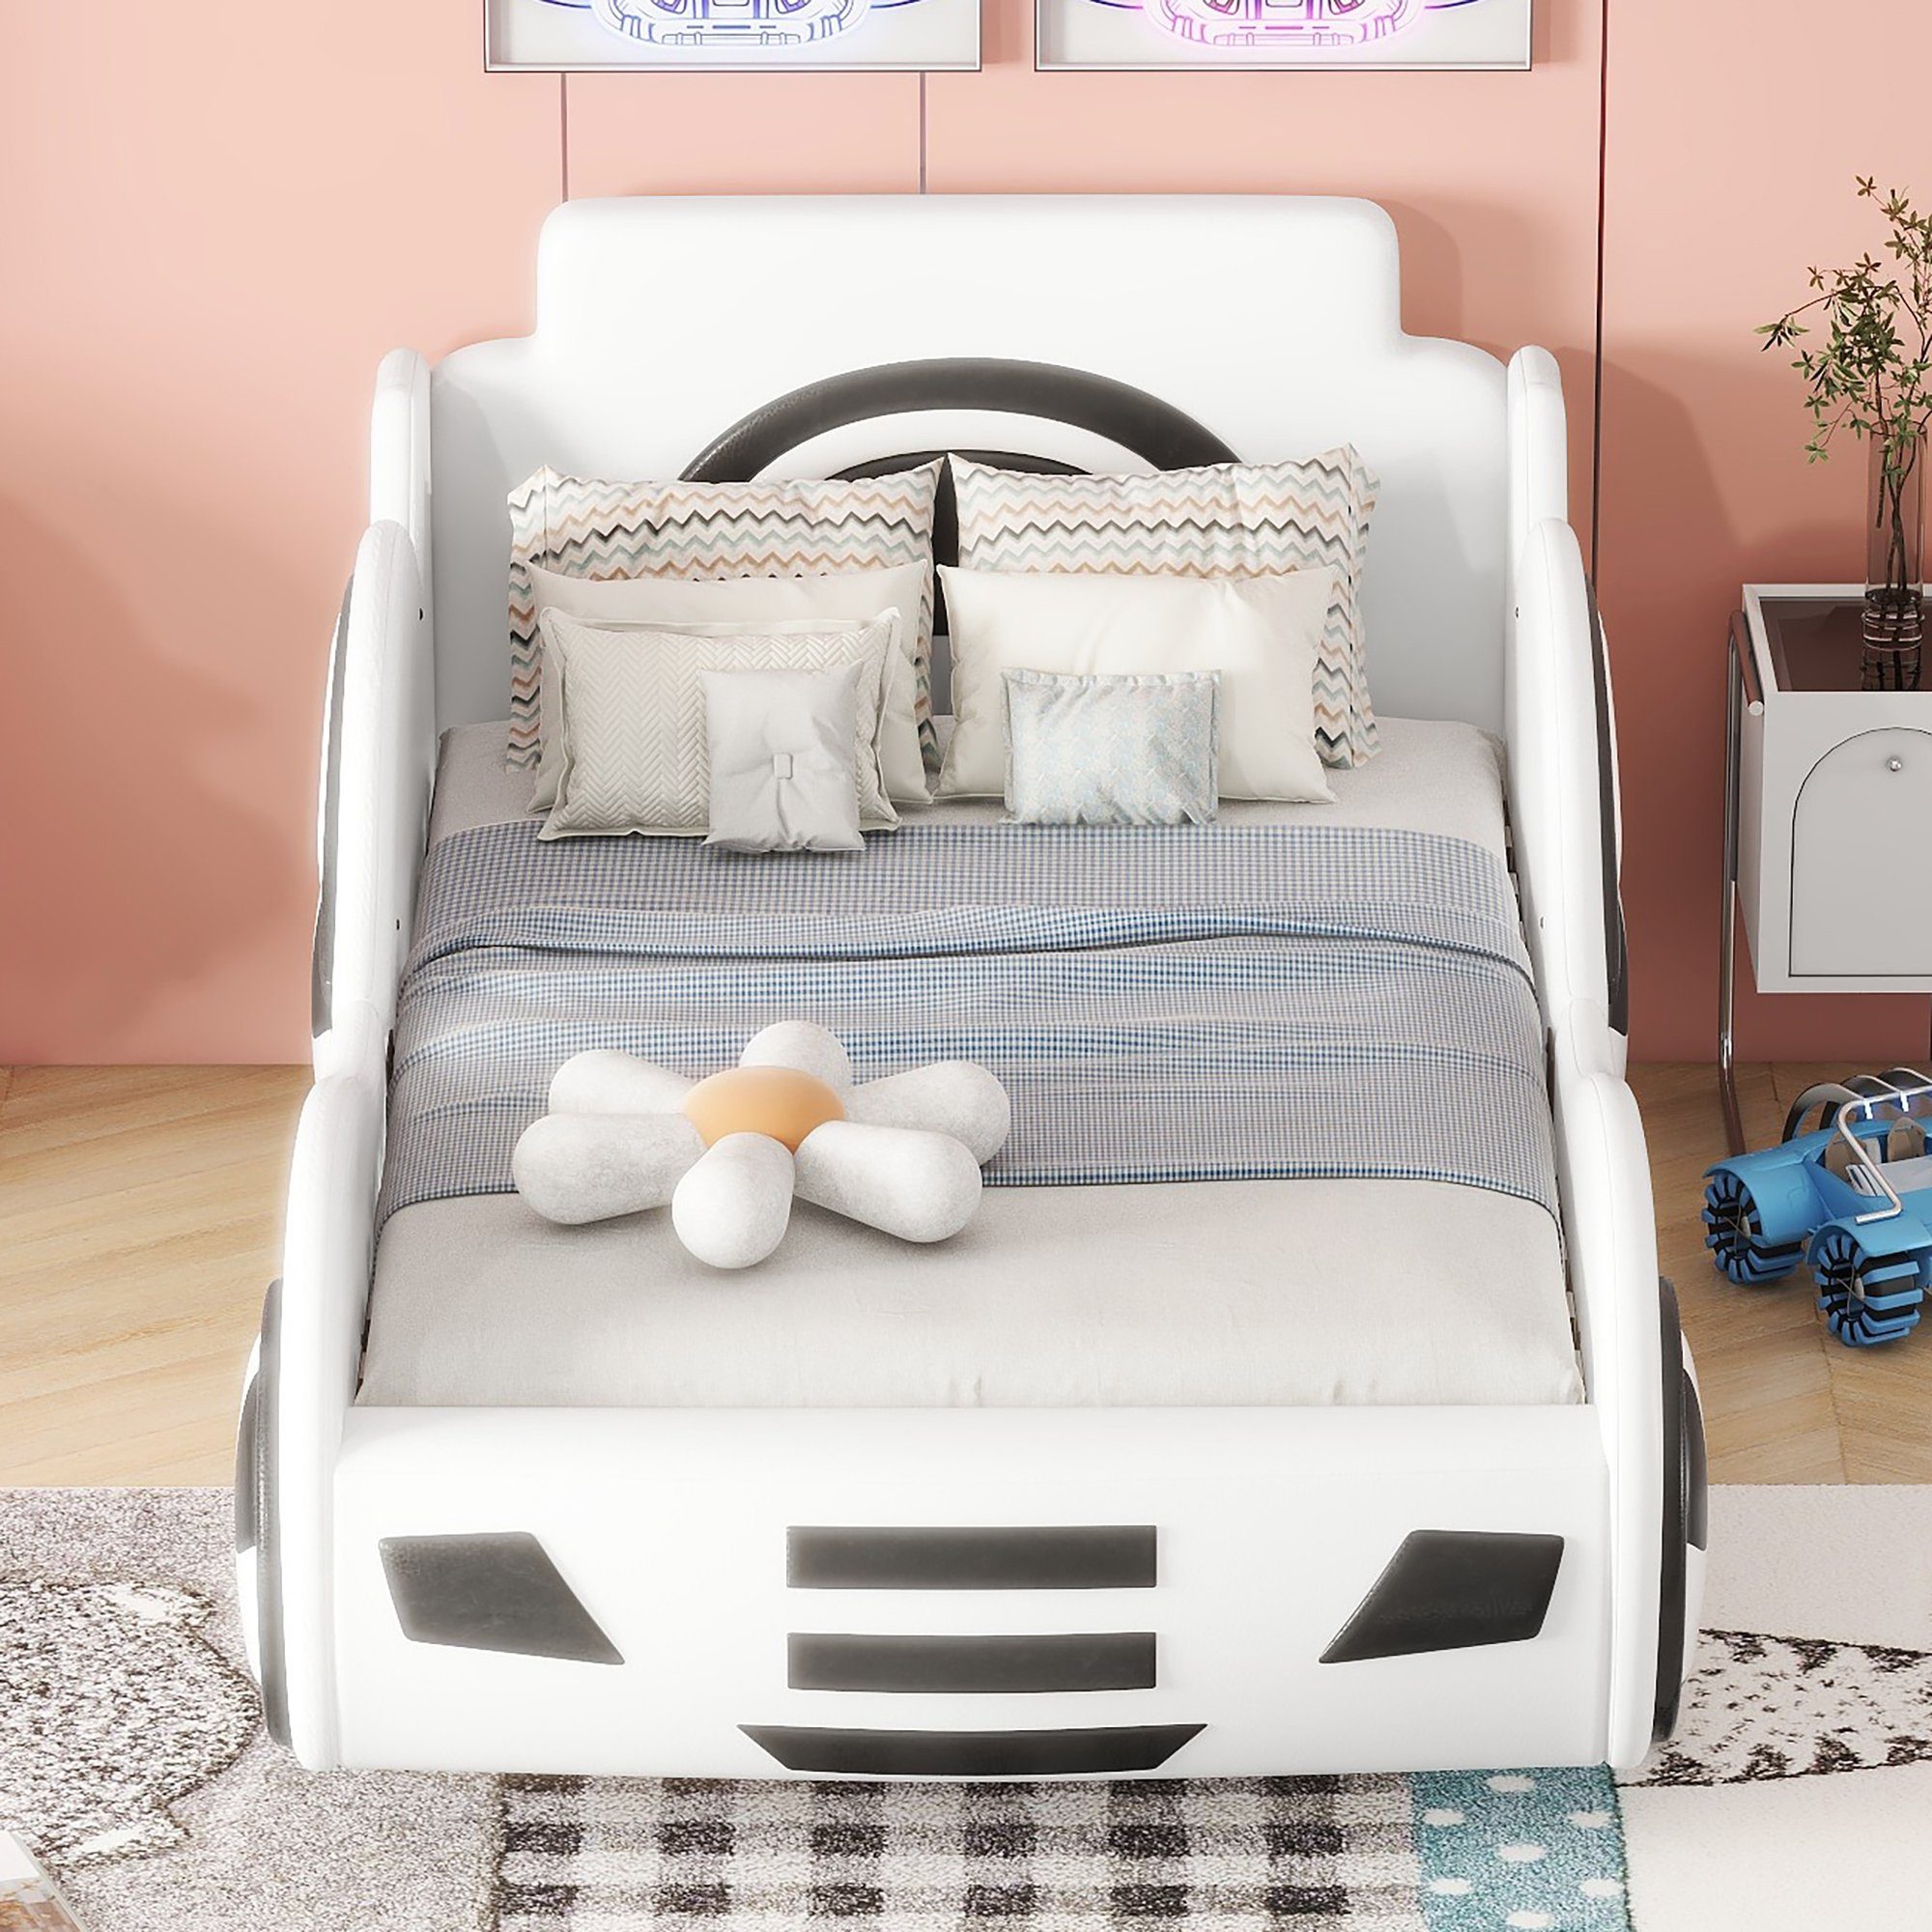 90×200cm Stauraum Kunstleder Hydraulisches mit Kinderbett Spielbett Weiß Autobett, Flieks